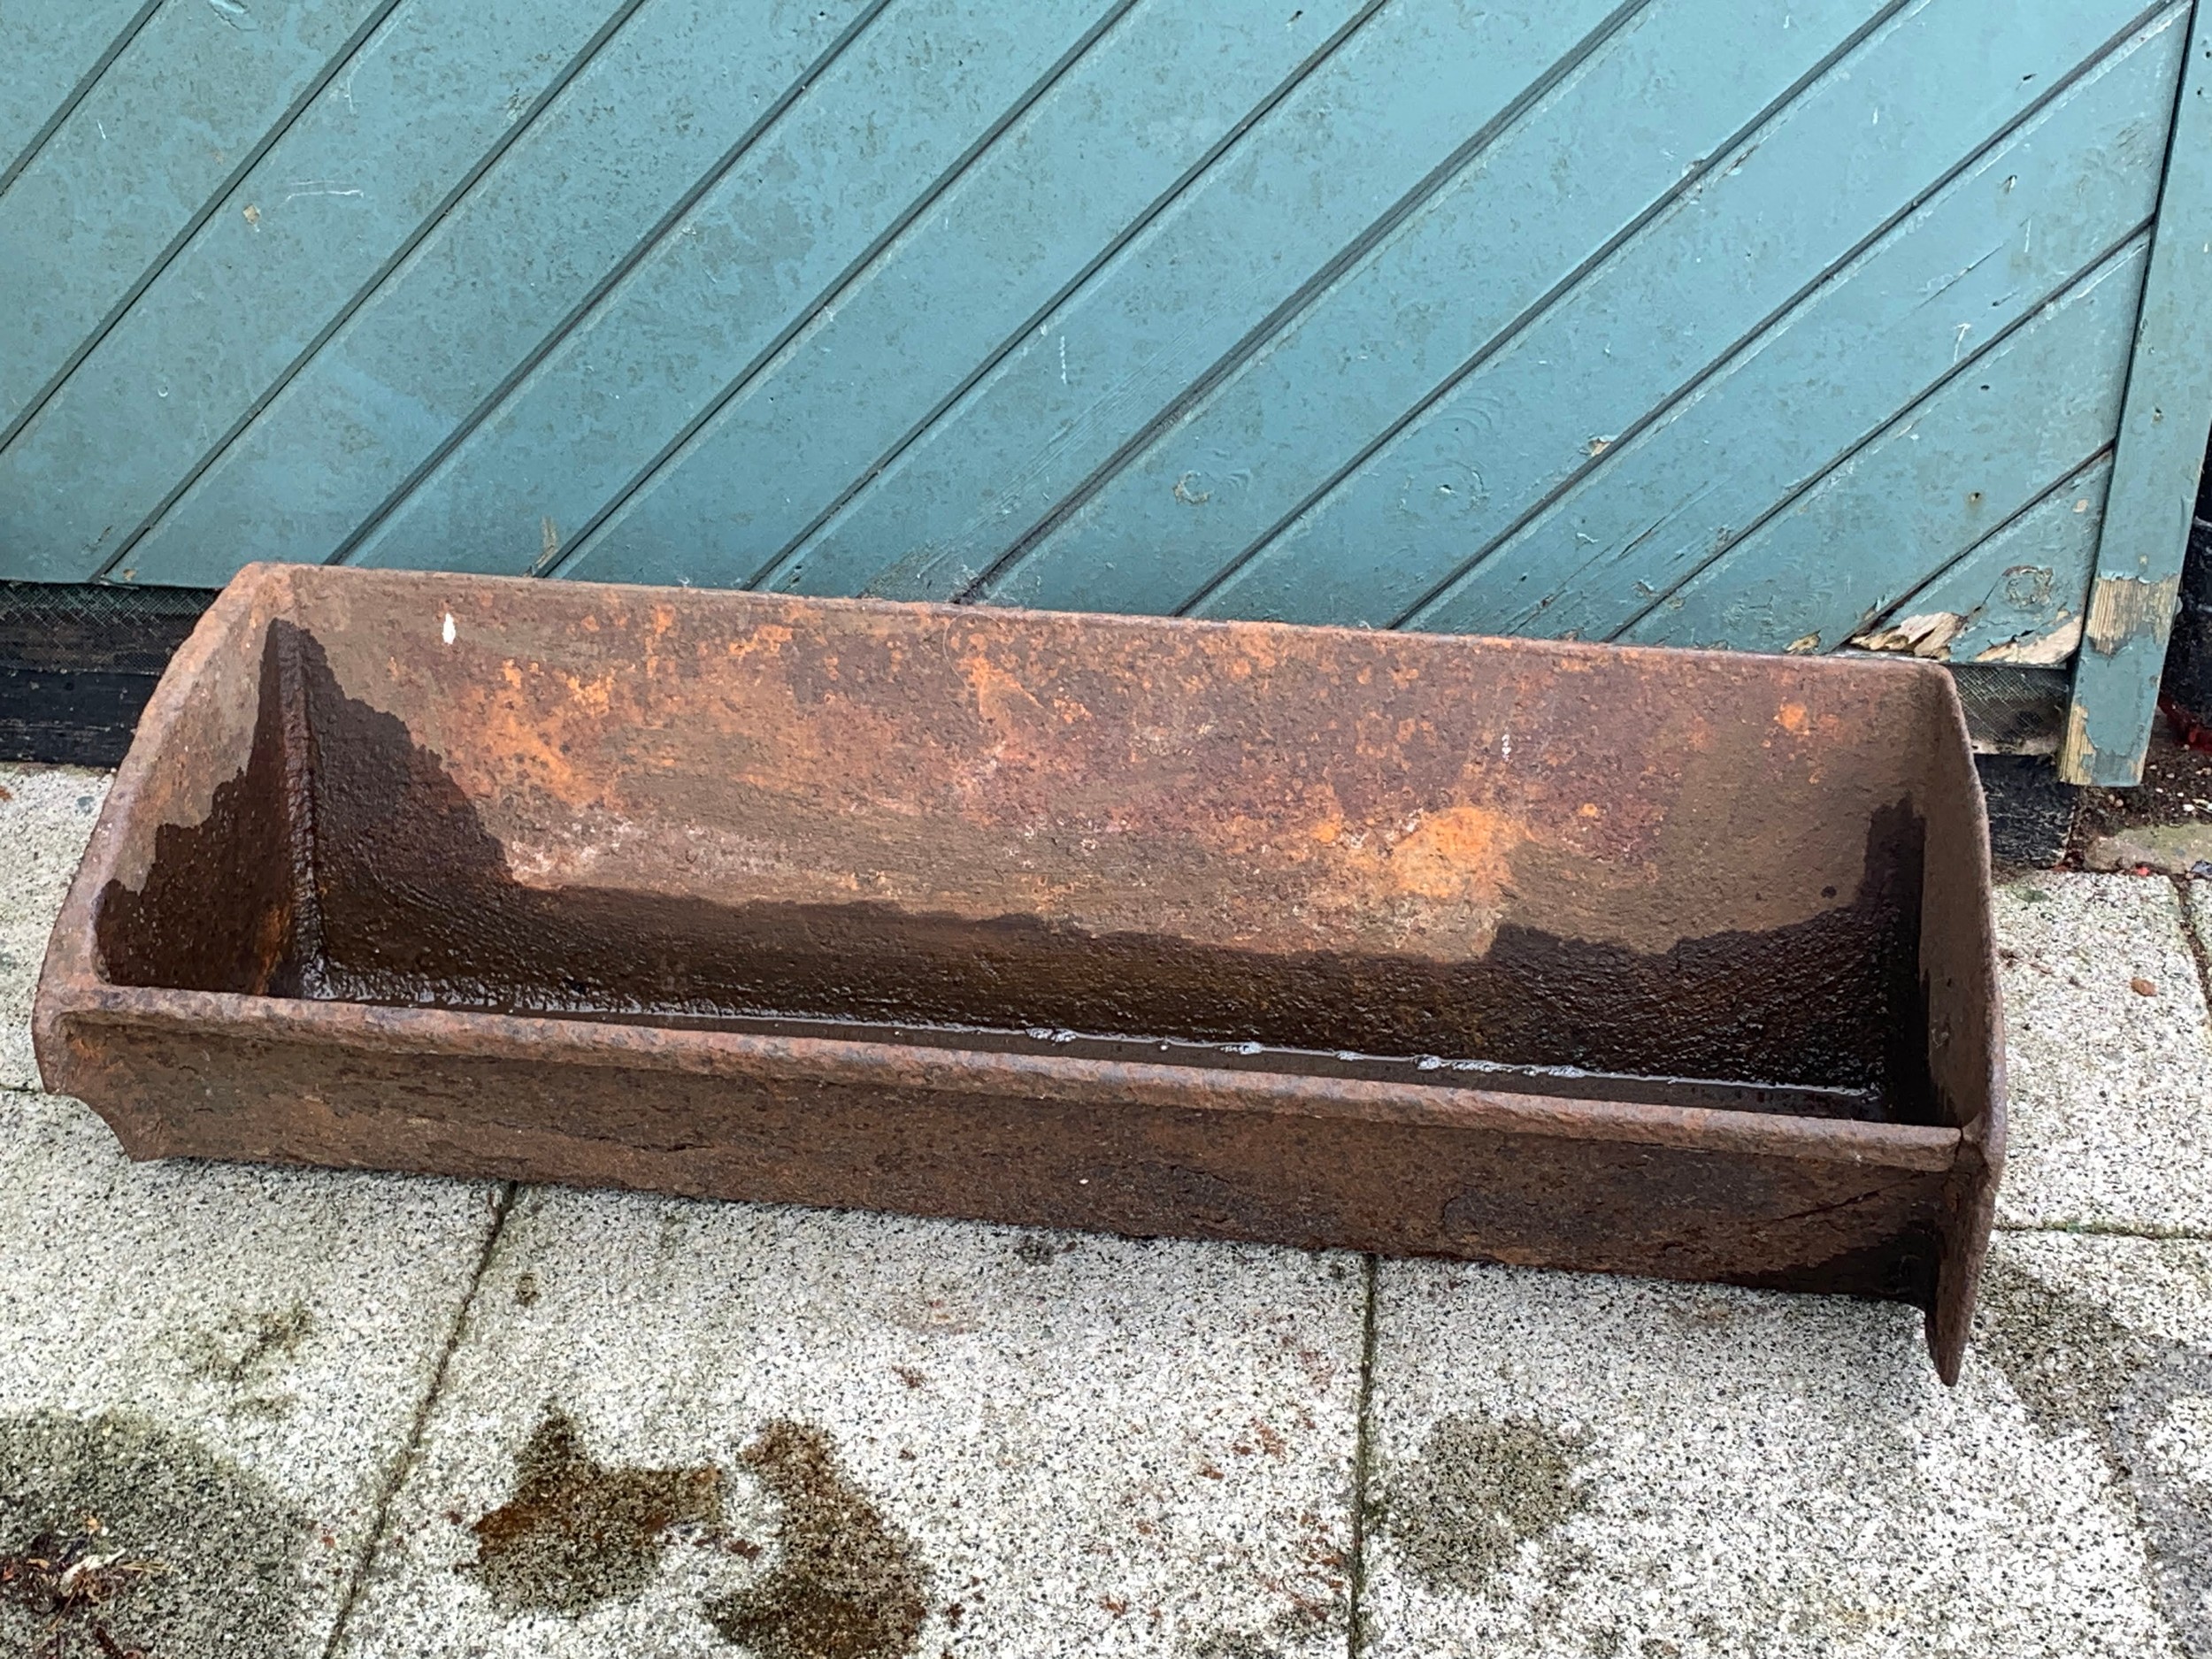 A cast iron trough, 91cm x 23cm x 34cm